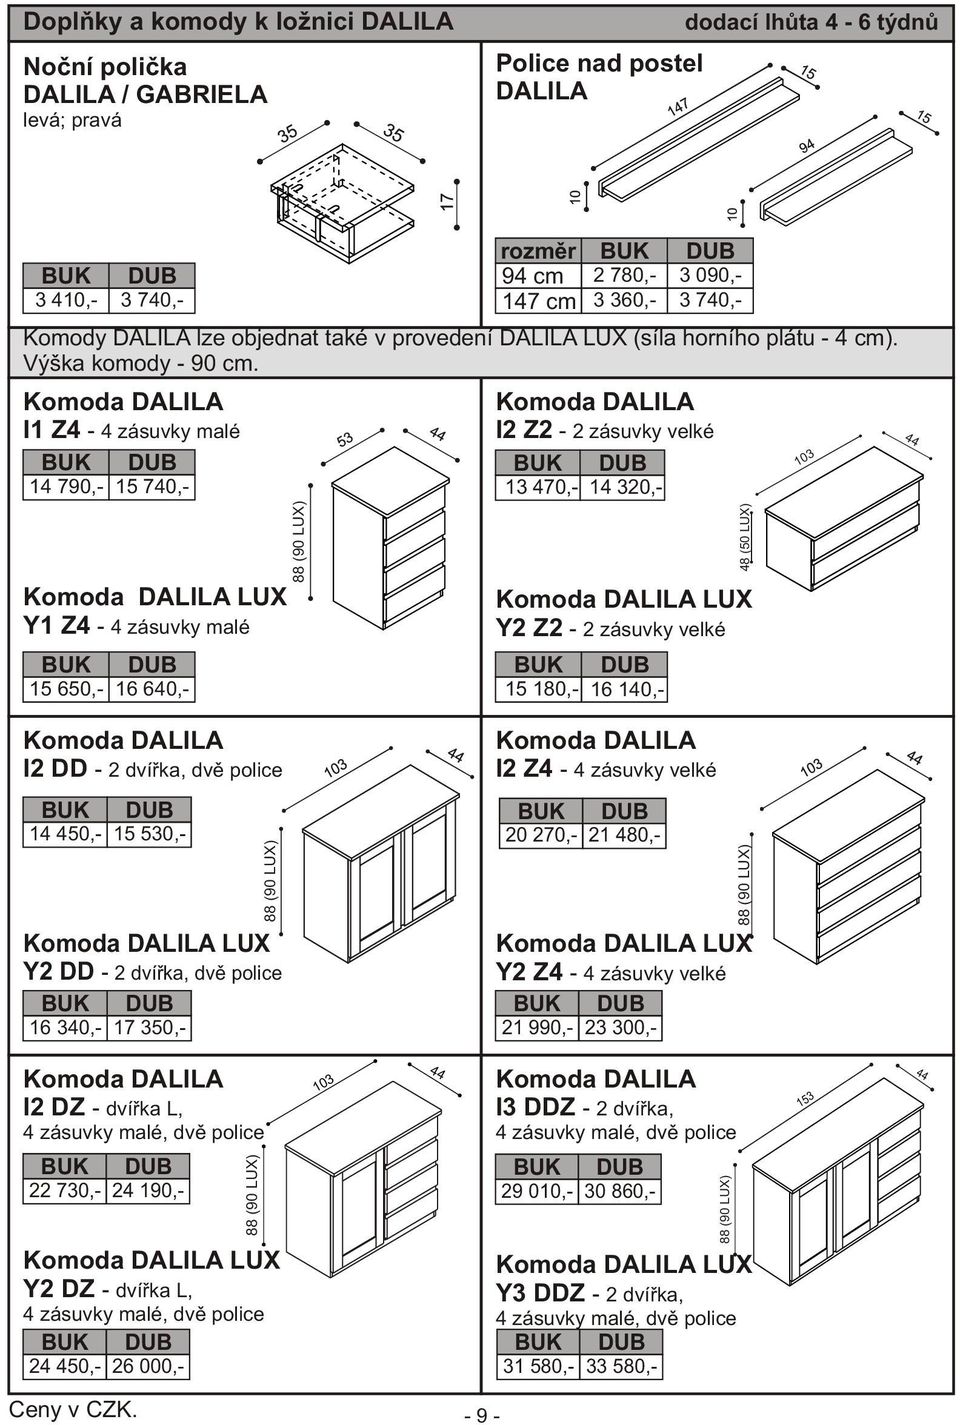 Komoda DALILA I1 Z4-4 zásuvky malé 14 790,- 15 740,- Komoda DALILA LUX Y1 Z4-4 zásuvky malé 15 650,- 16 640,- (90 LUX) Komoda DALILA I2 Z2-2 zásuvky velké 13 470,- 14 320,- 15 180,- 16 140,- 48 (50